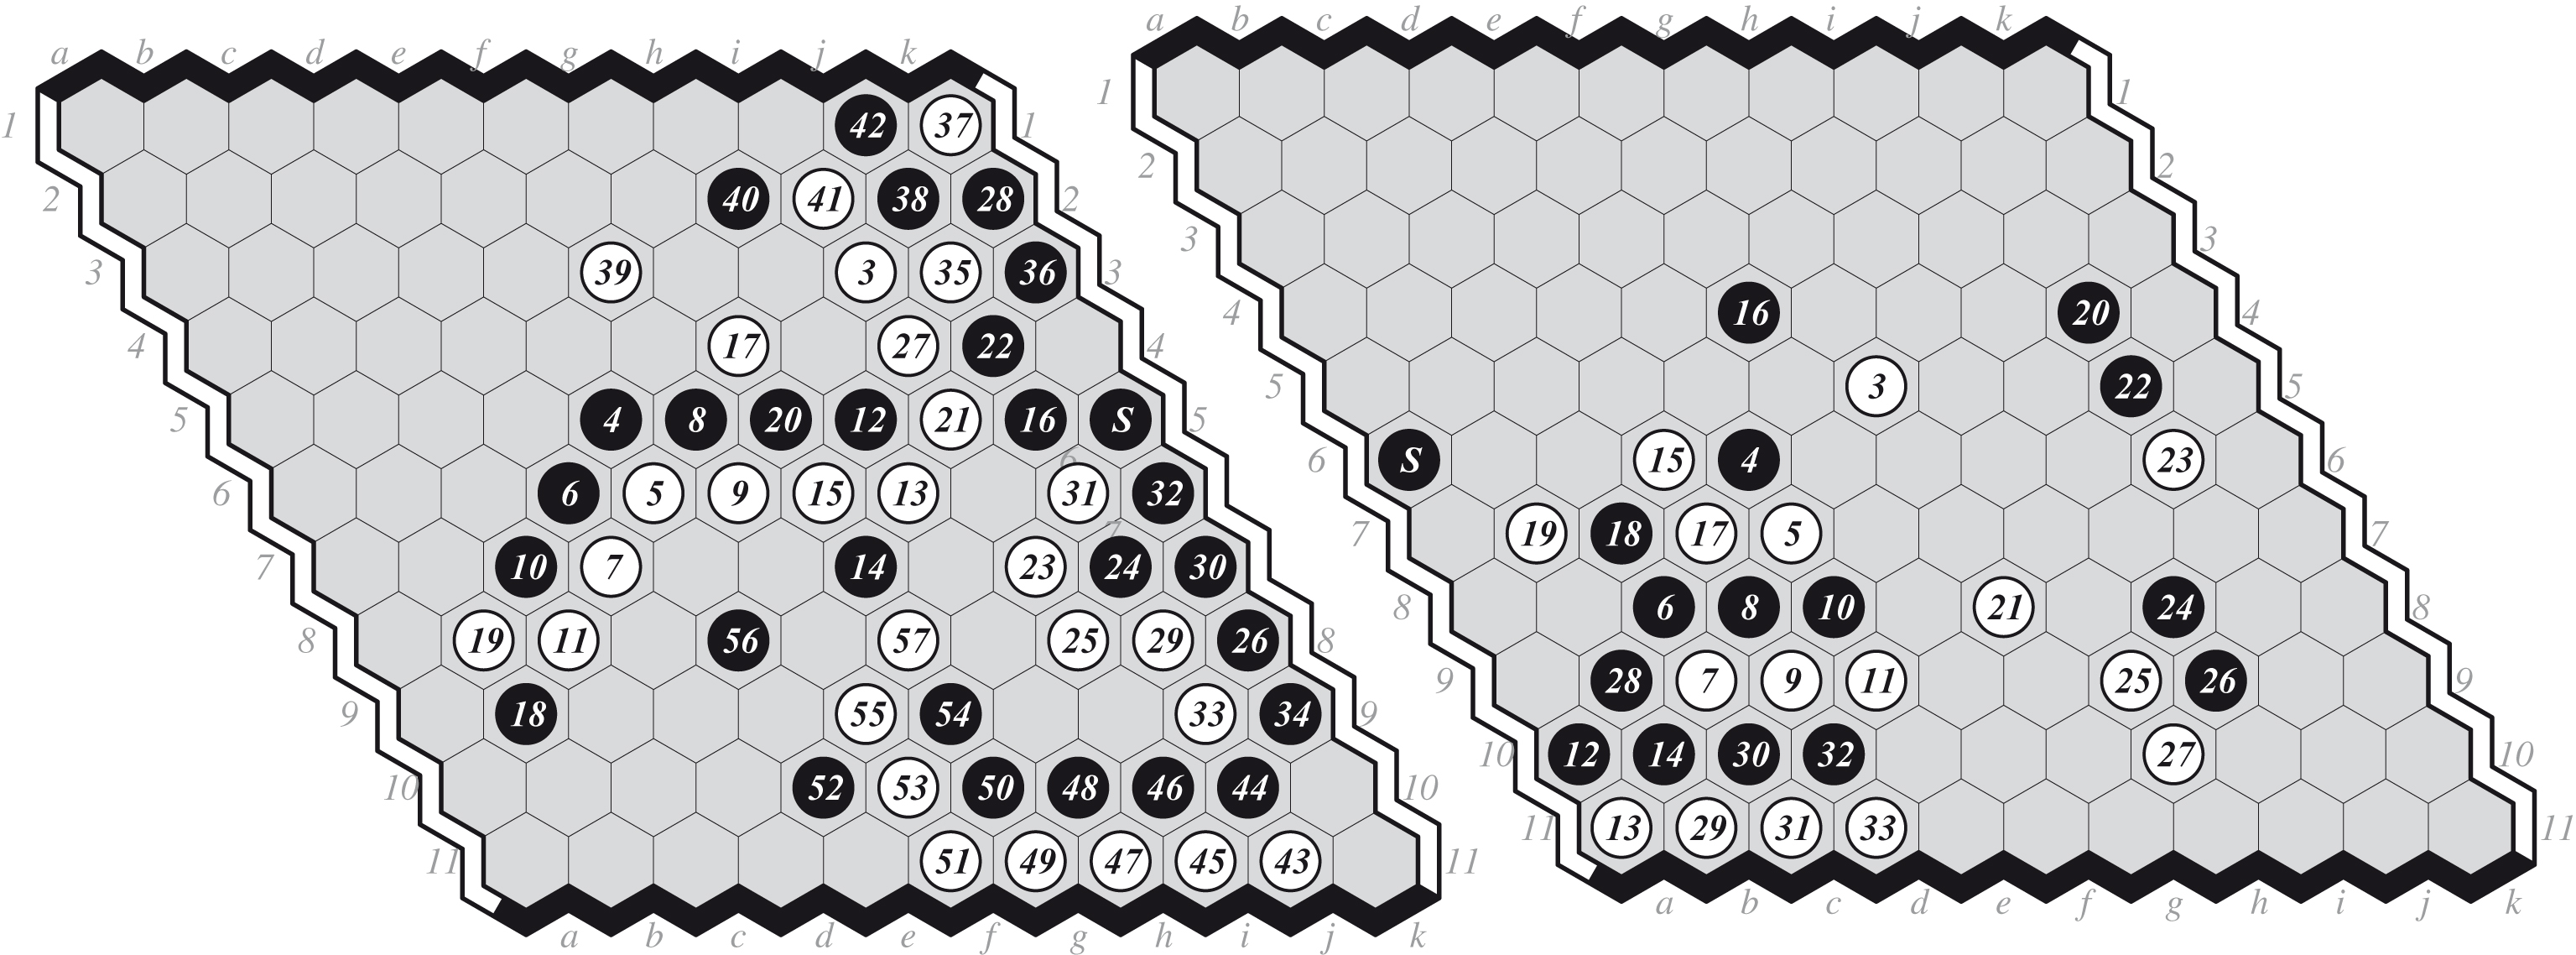 (a) Game 5: EZO-DEEPHEX 0-1, and (b) Game 9: MOHEX-DEEPHEX 1-0.